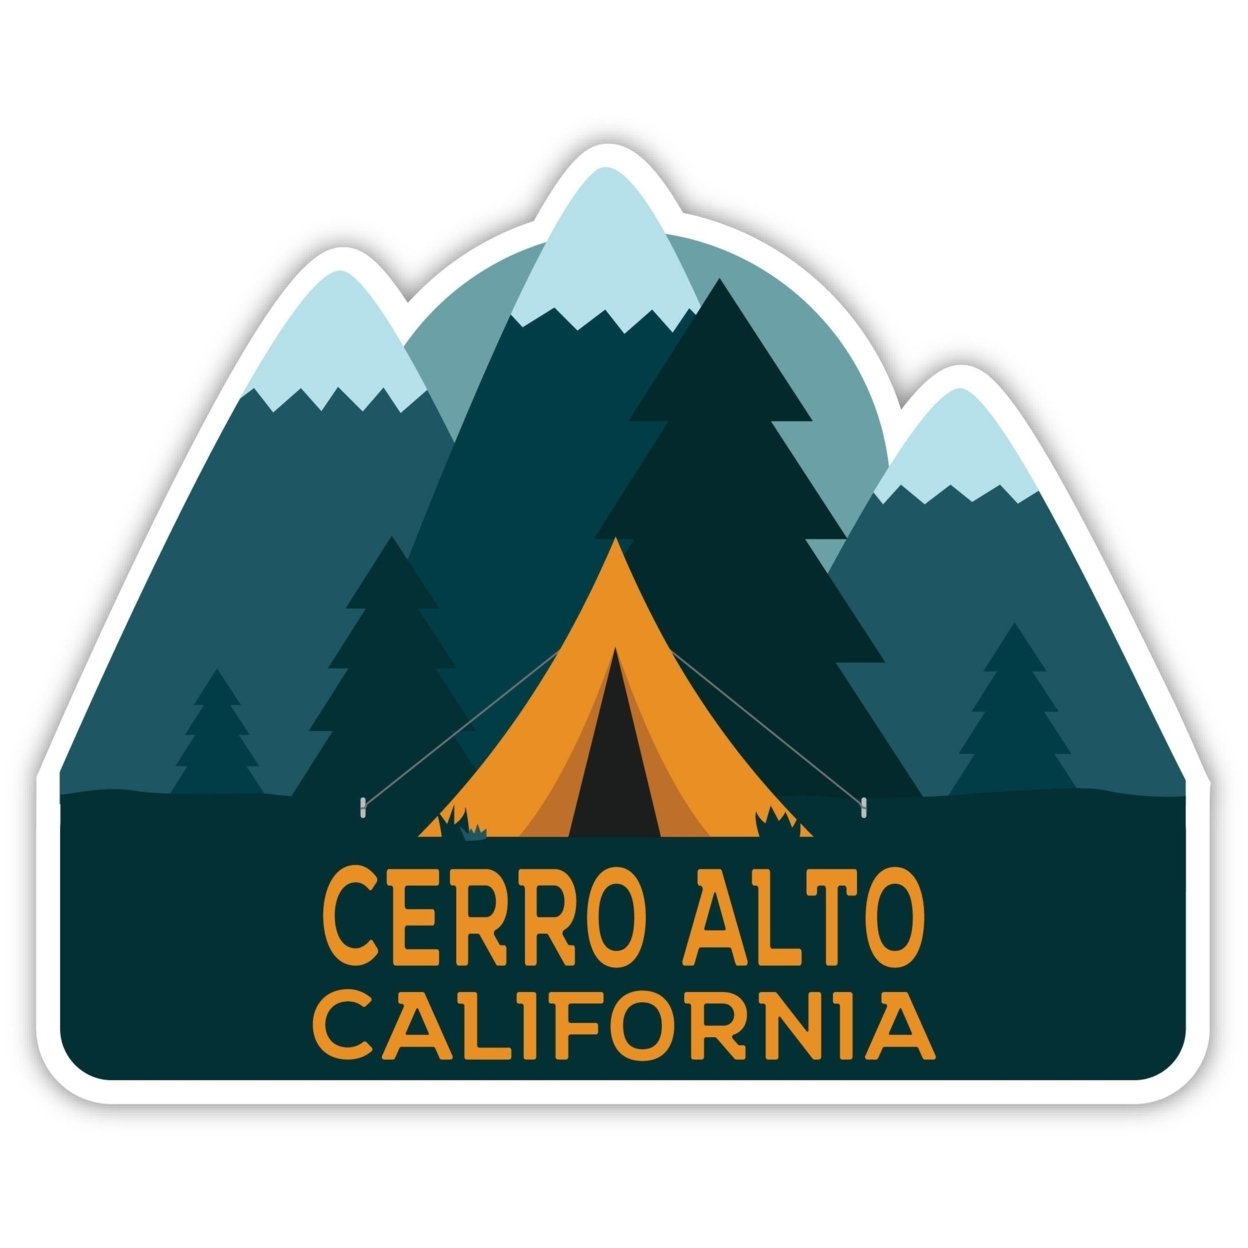 Cerro Alto California Souvenir Decorative Stickers (Choose Theme And Size) - 4-Pack, 2-Inch, Tent